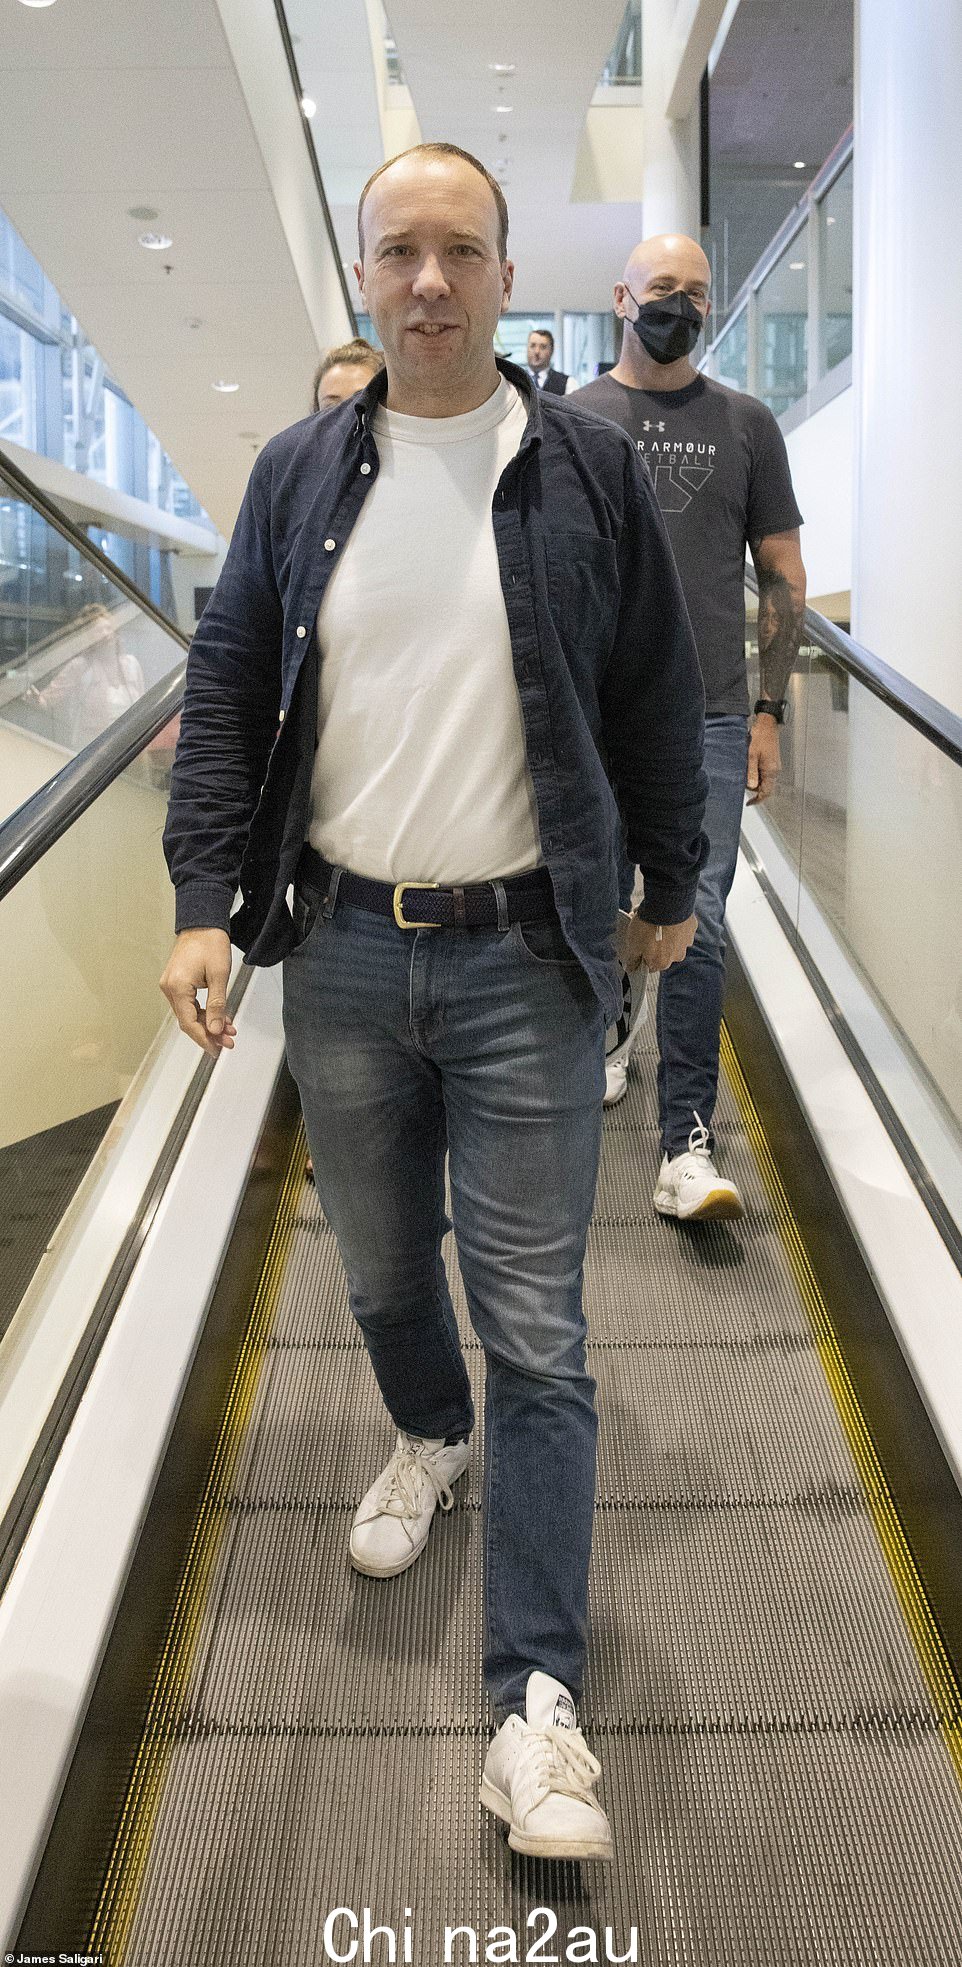 马特汉考克抵达布里斯班机场参加新系列的《我是名人》……让我离开这里！” class=